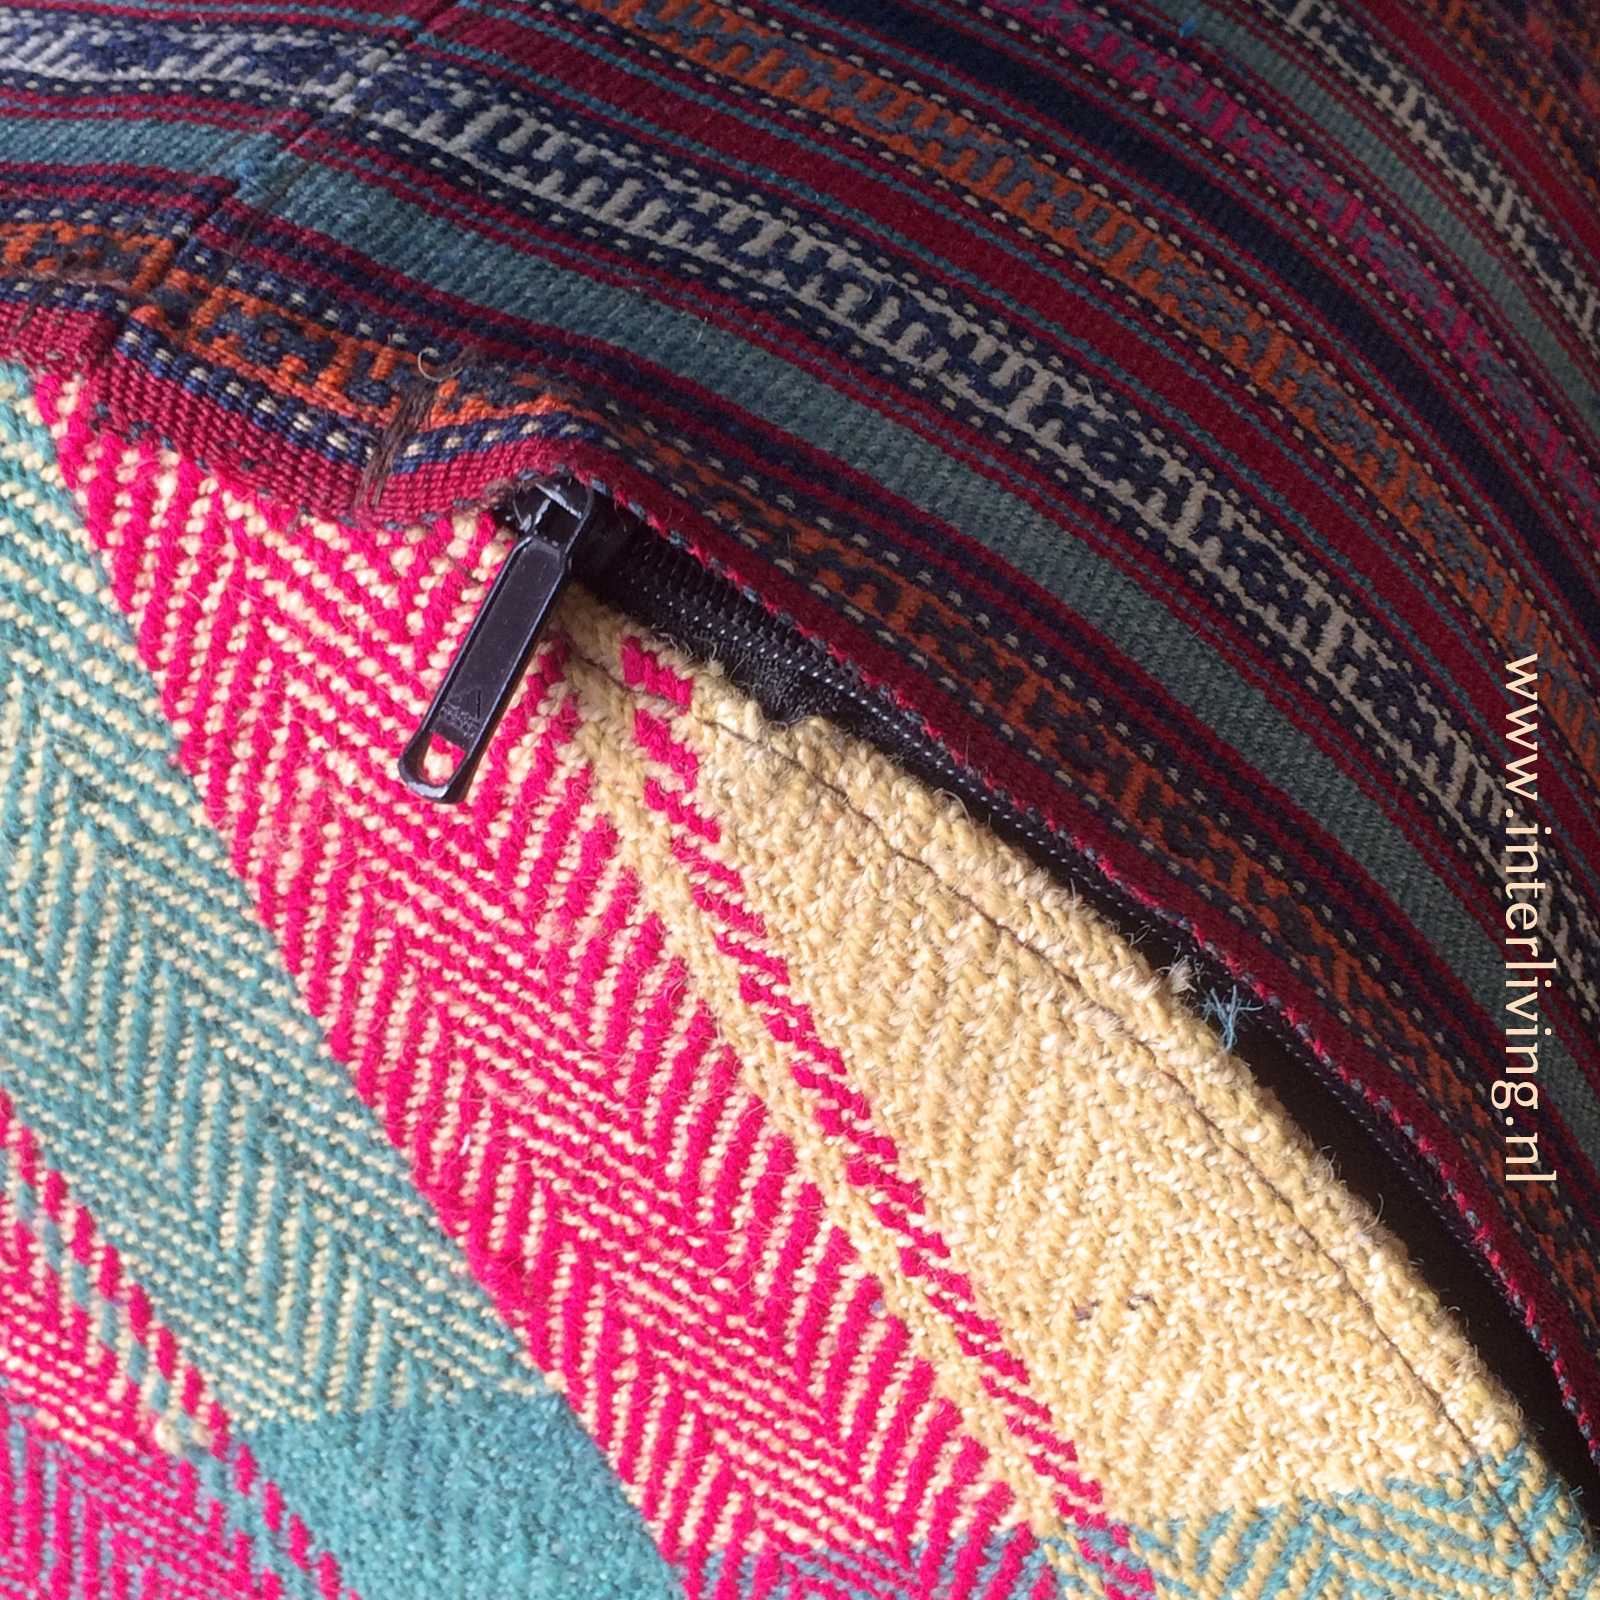 grote ronde poef van geweven kelim tapijt - handgemaakt uit Iran - binnenkijken oosterse woonstijl styling idee